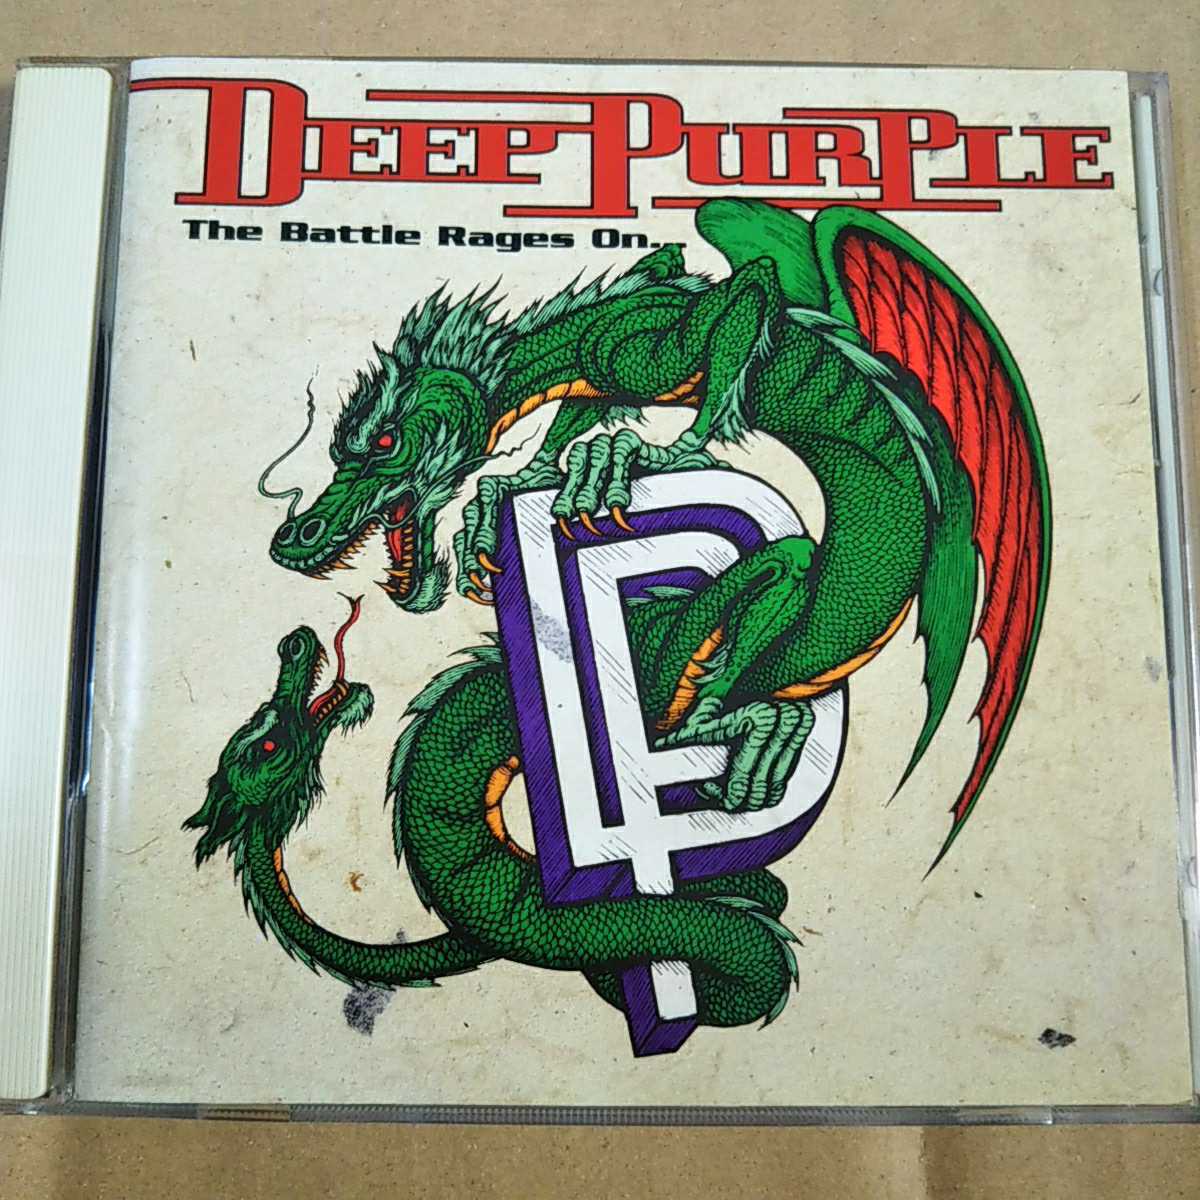 中古CD DEEP PURPLE / ディープ・パープル『The Battle Rages On ……』国内盤/帯無し BVCP-650【1334】